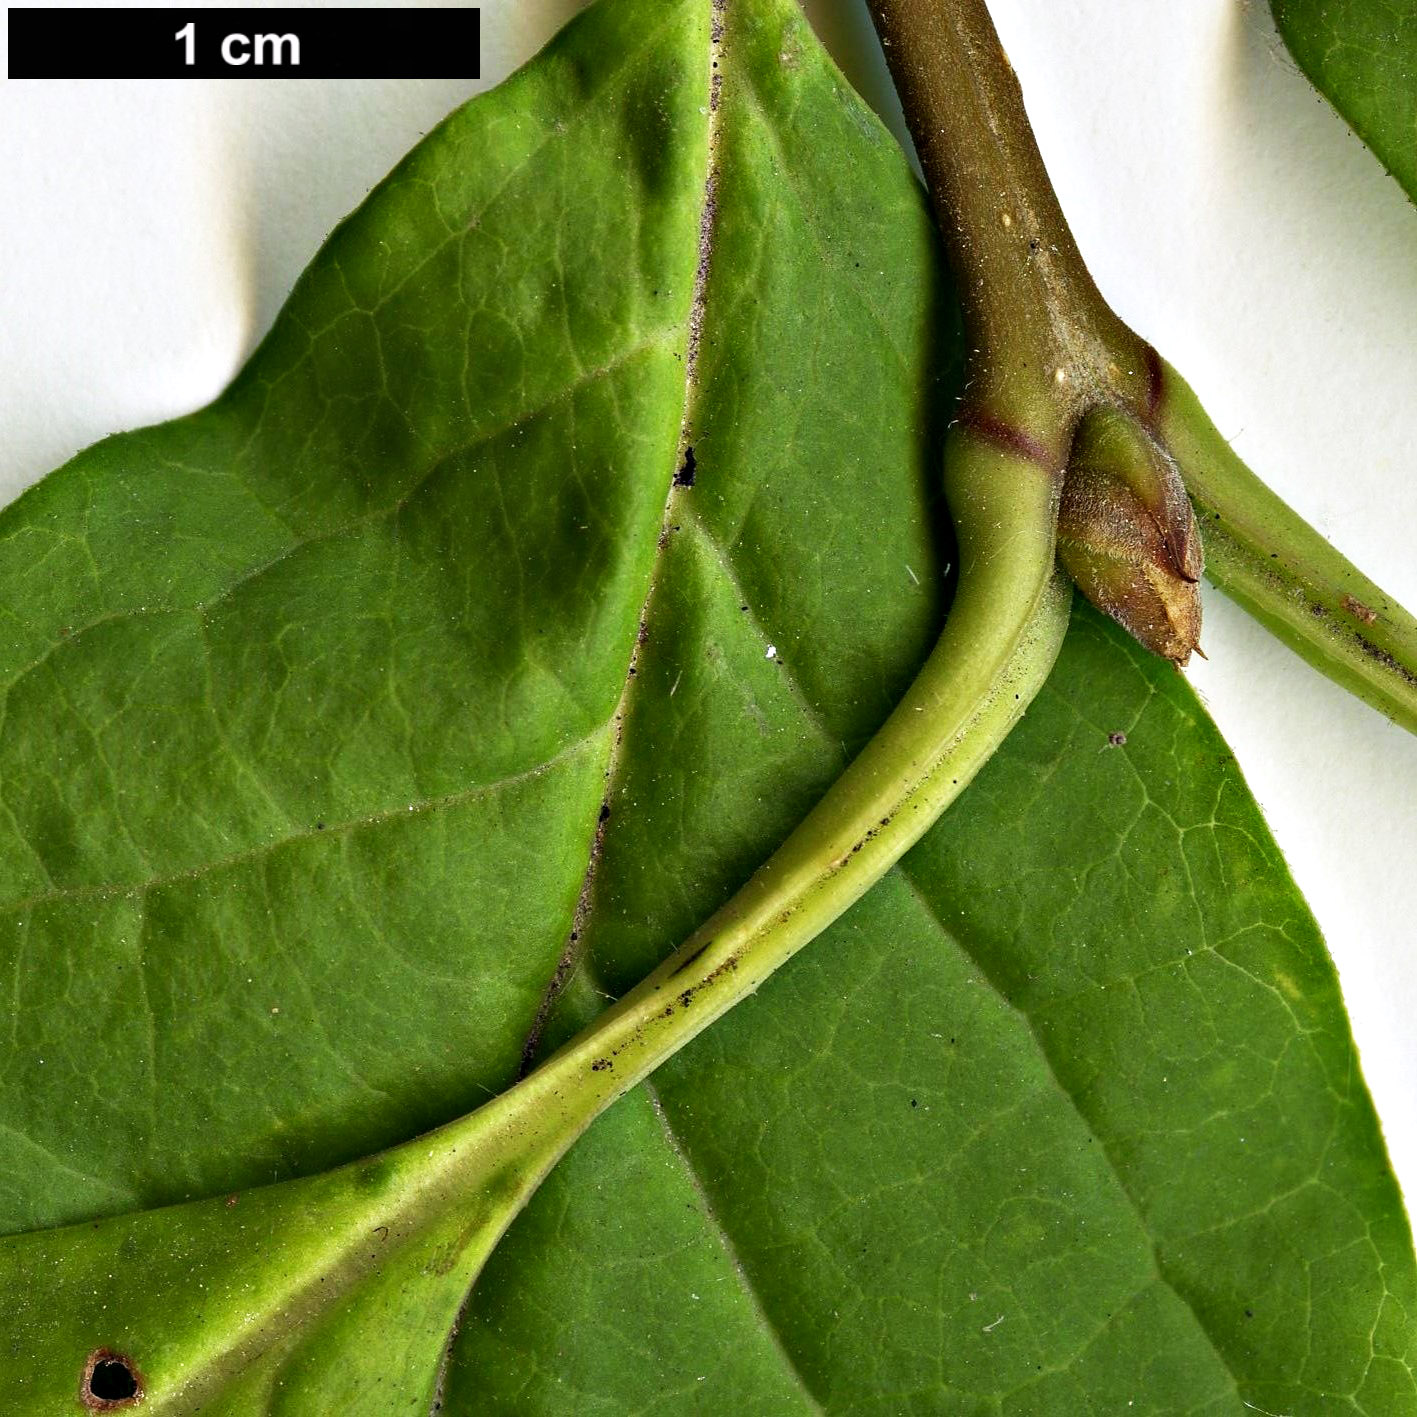 High resolution image: Family: Oleaceae - Genus: Syringa - Taxon: komarowii - SpeciesSub: subsp. reflexa